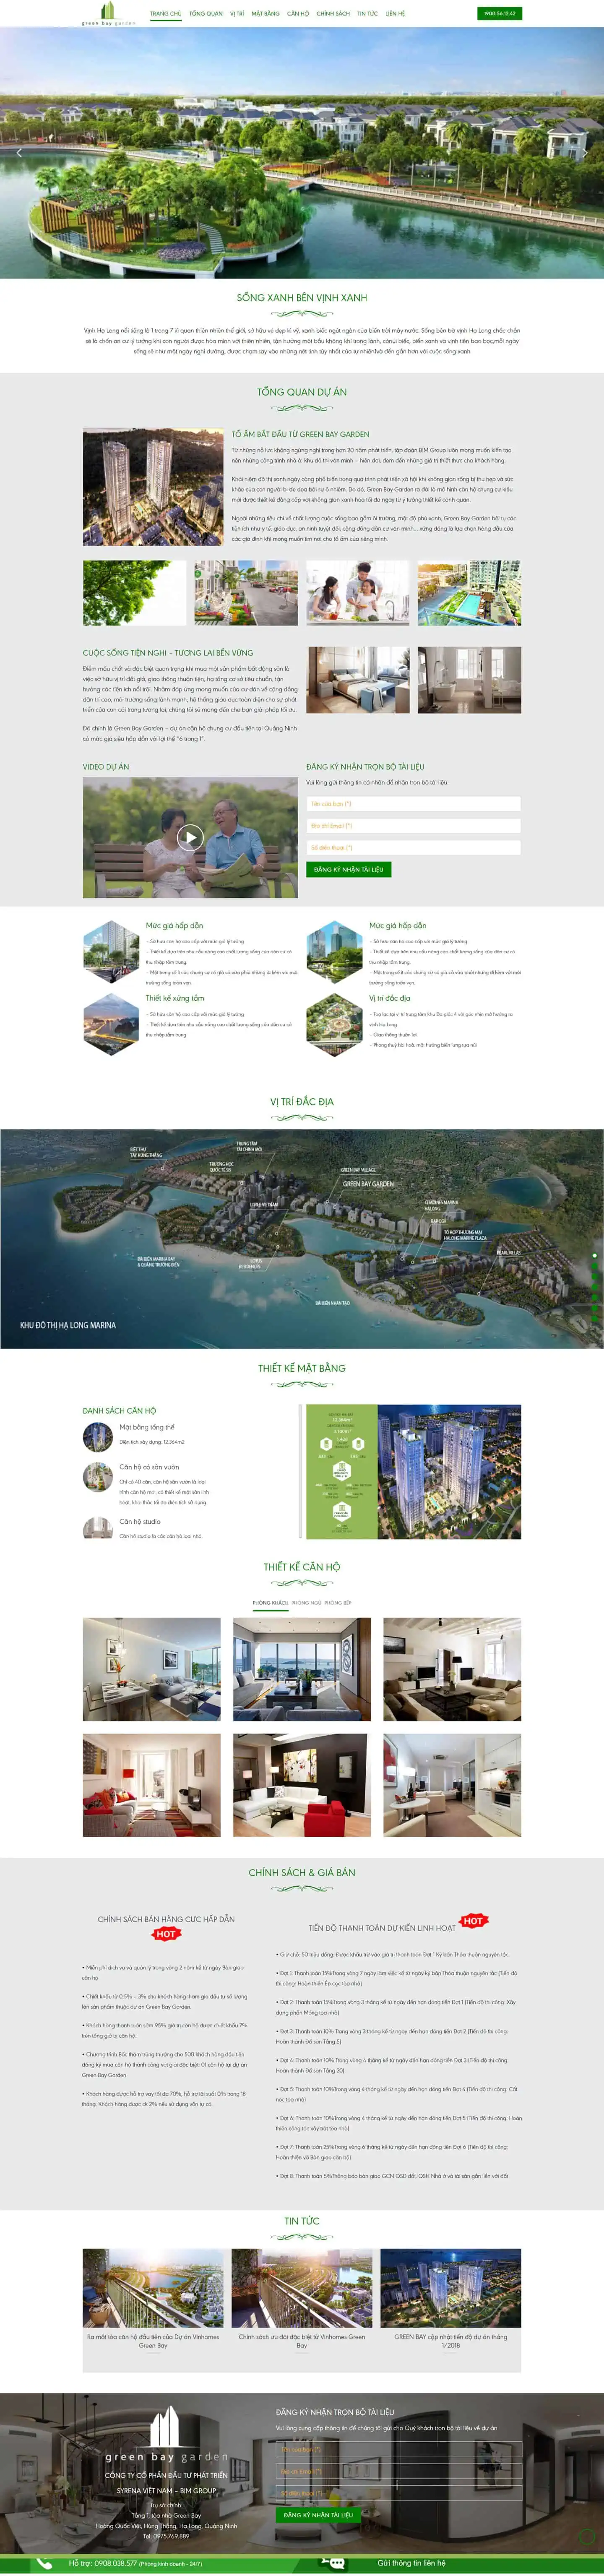 Theme giới thiệu dự án bất động sản Green Bay 2